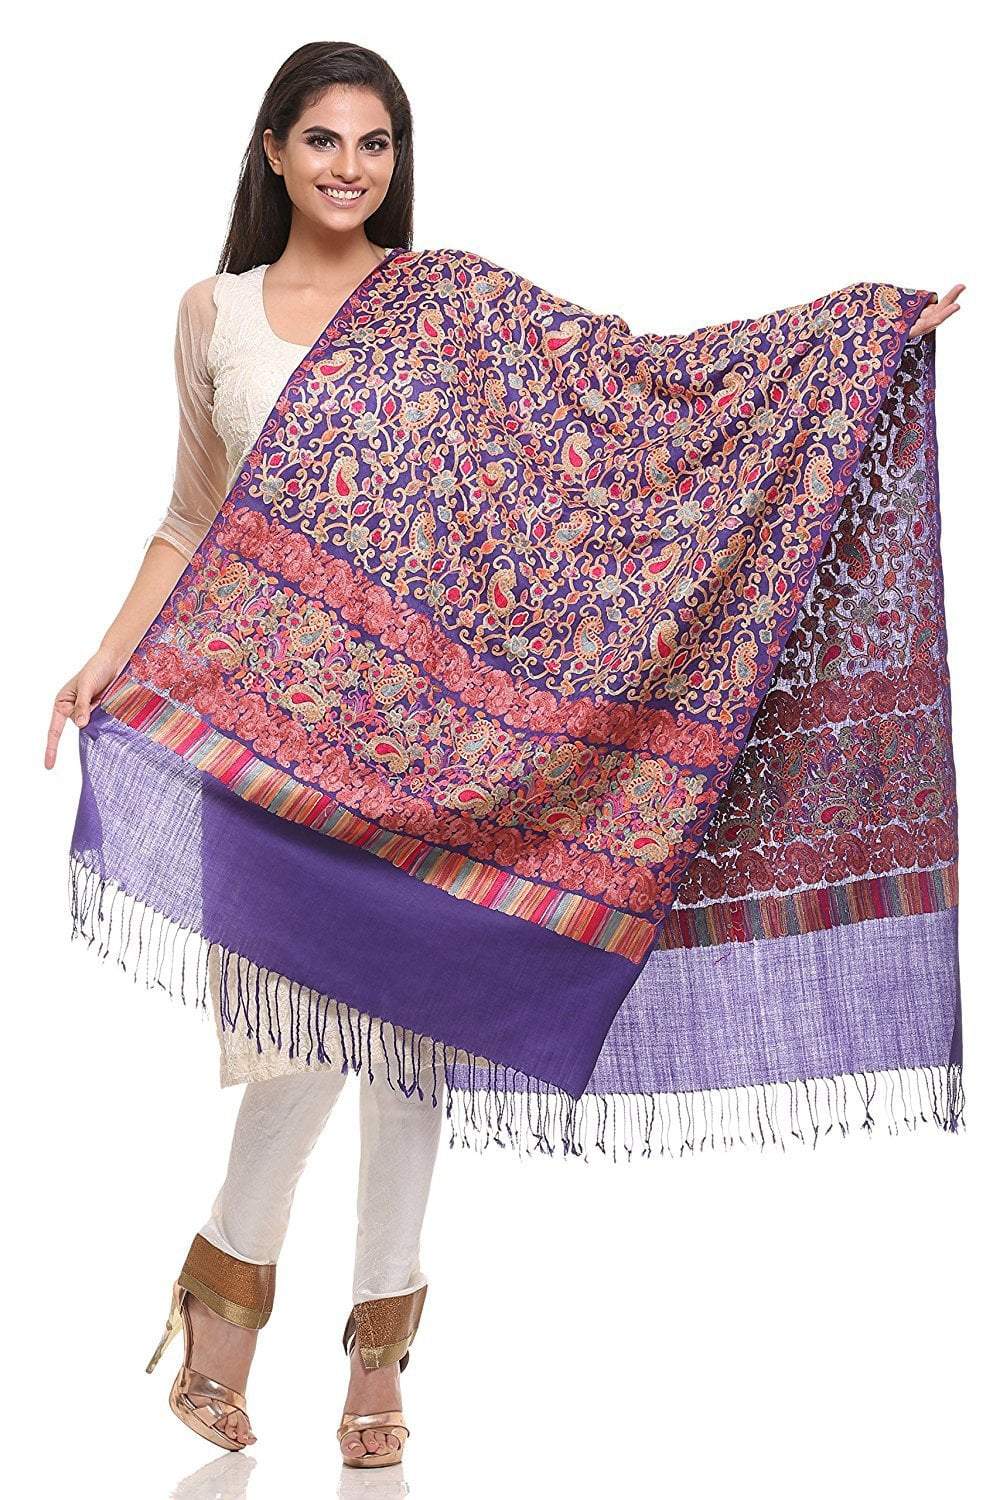 Pashtush Store Pashtush Womens Aari Embroidery Jaal Stole, Pashmina Shawls, Stoles (Muave)